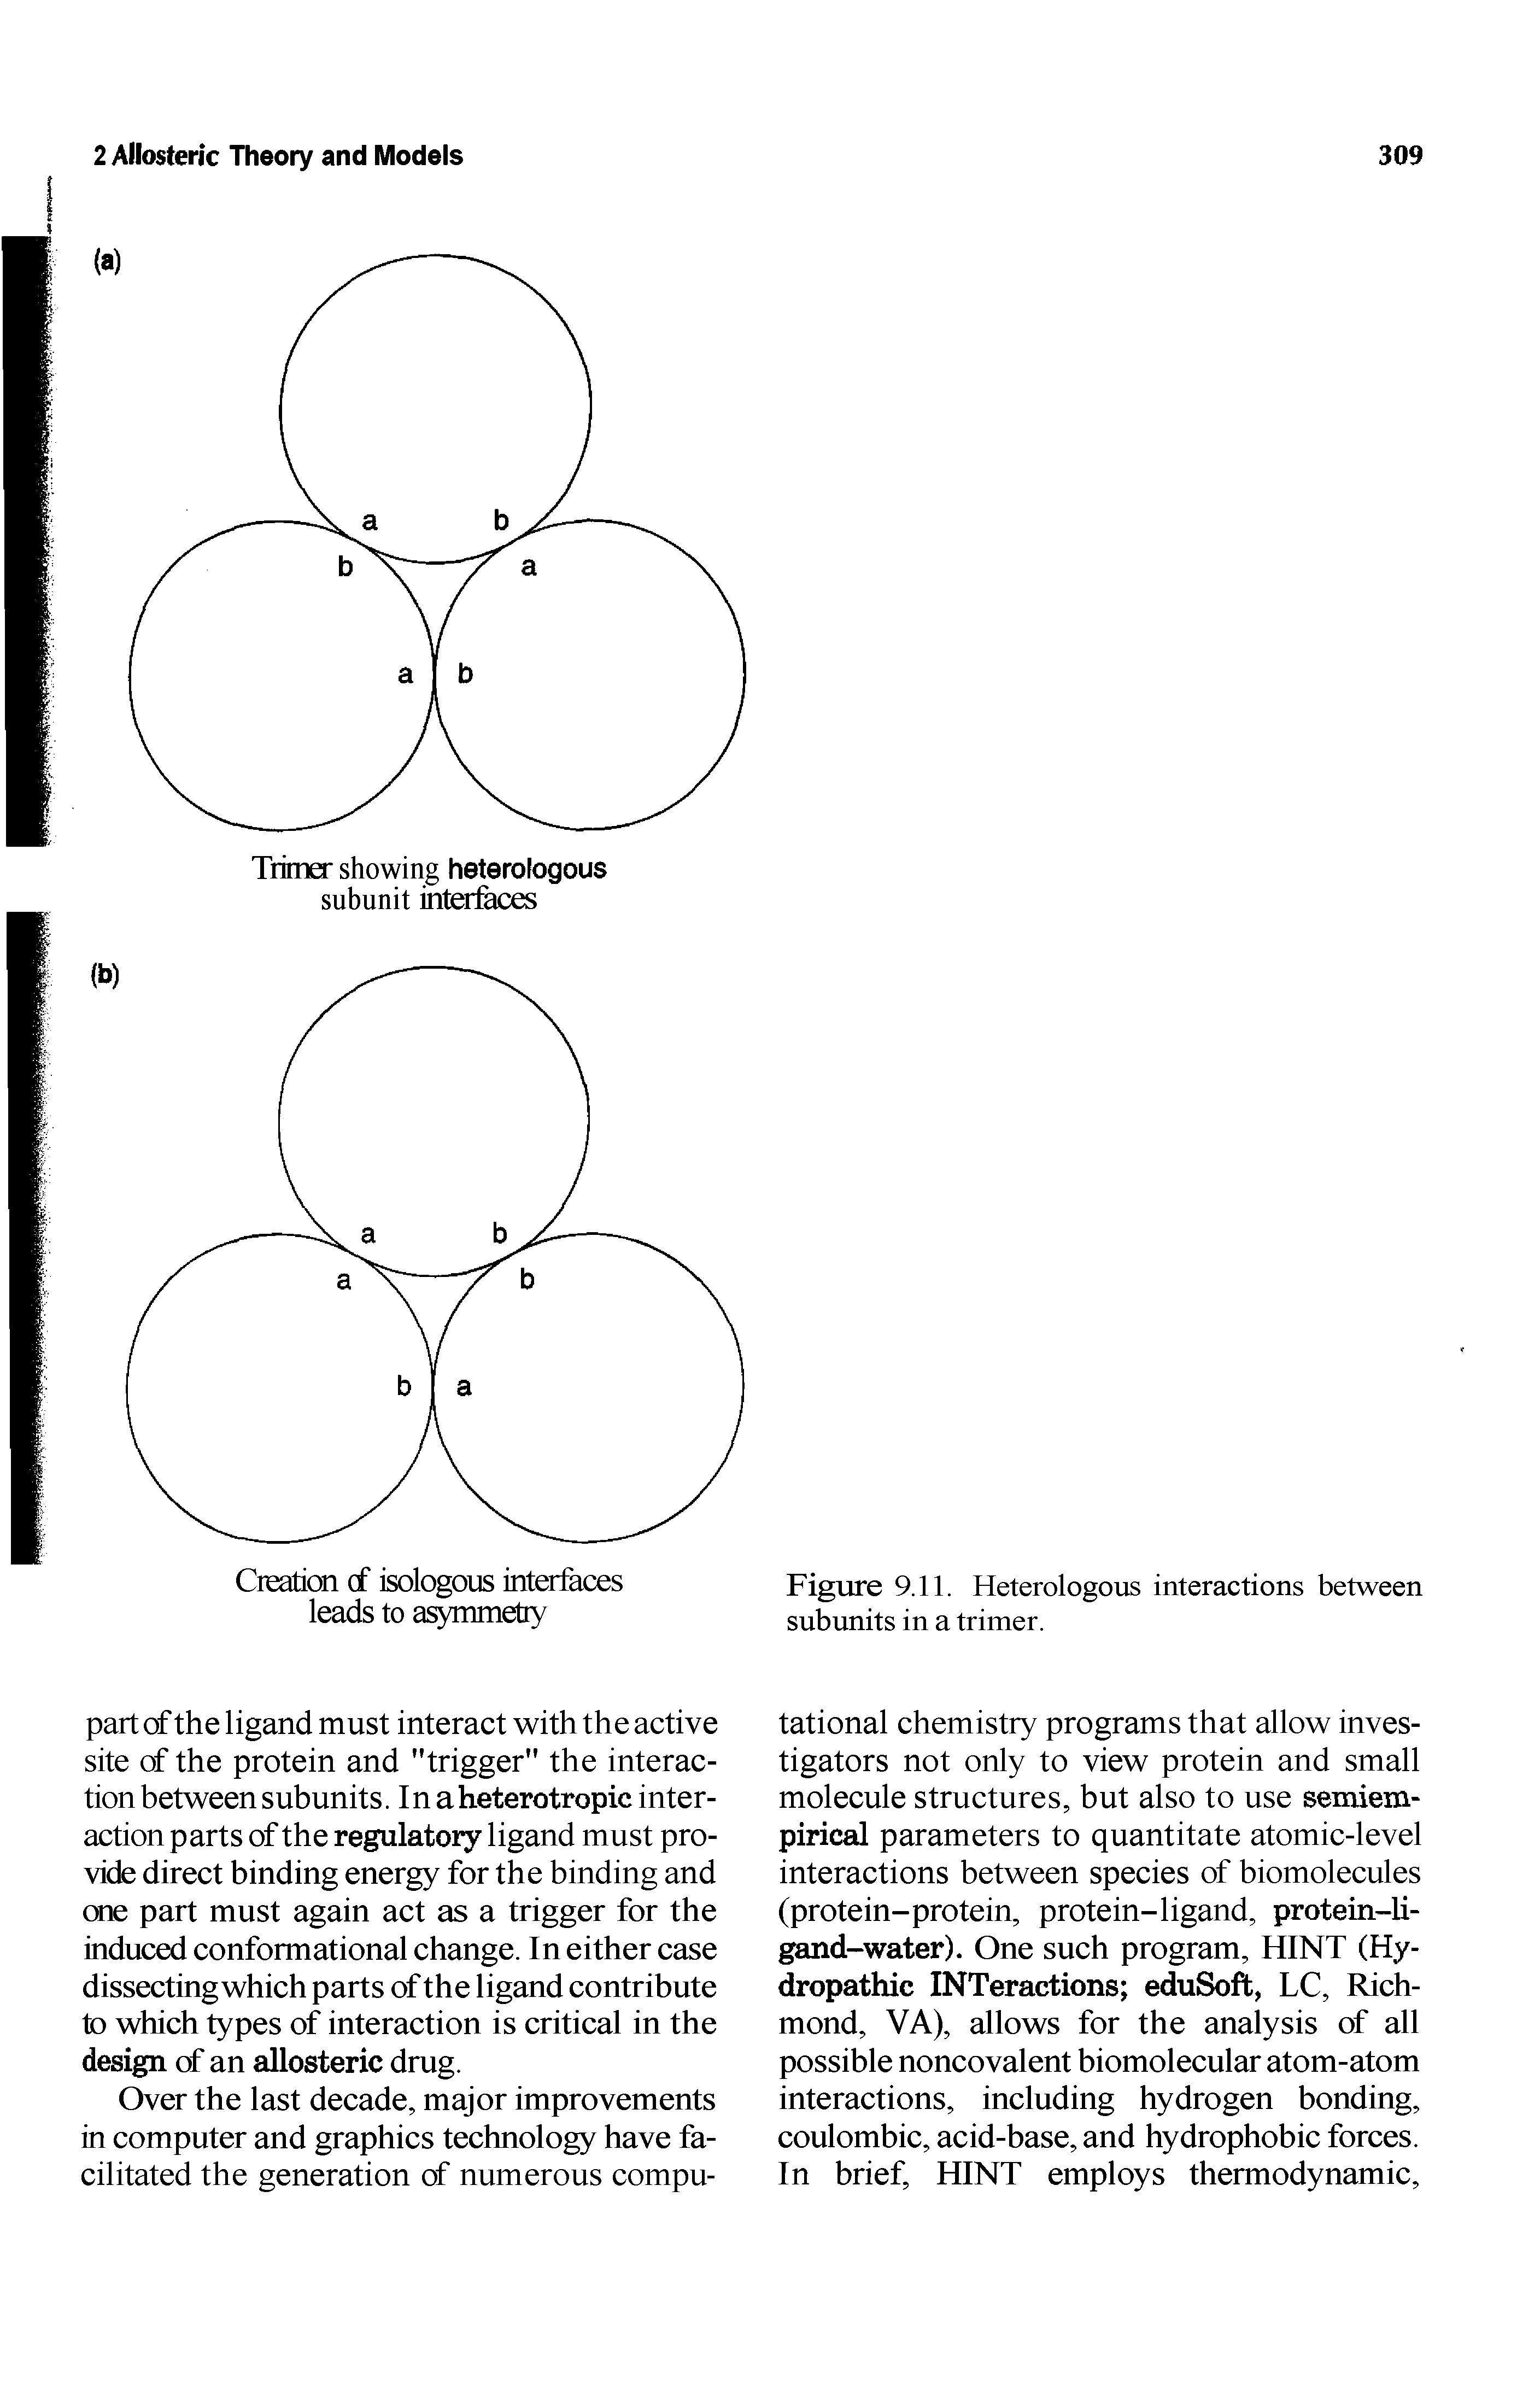 Figure 9.11. Heterologous interactions between subunits in a trimer.